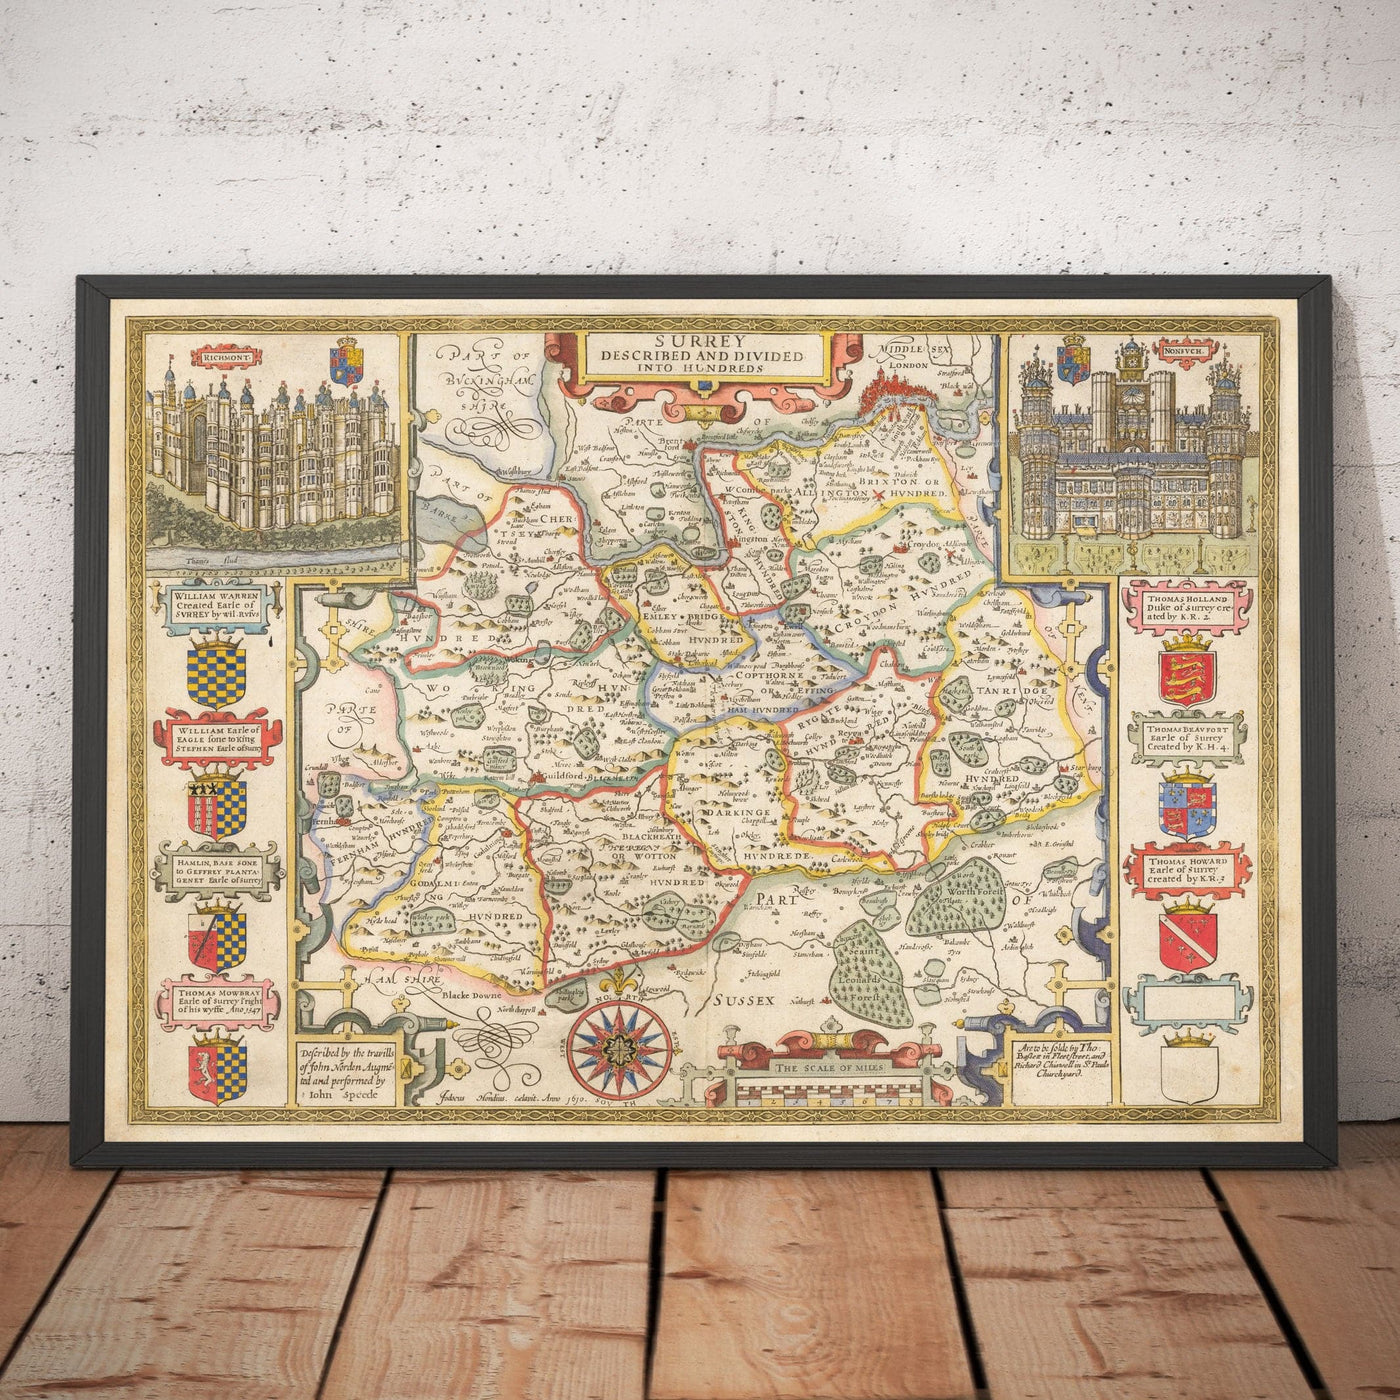 Alte Karte von Surrey 1611 von John Speed - Woking, Guildford, Croydon, Richmond, Esher, Cobham, Sutton, Morden